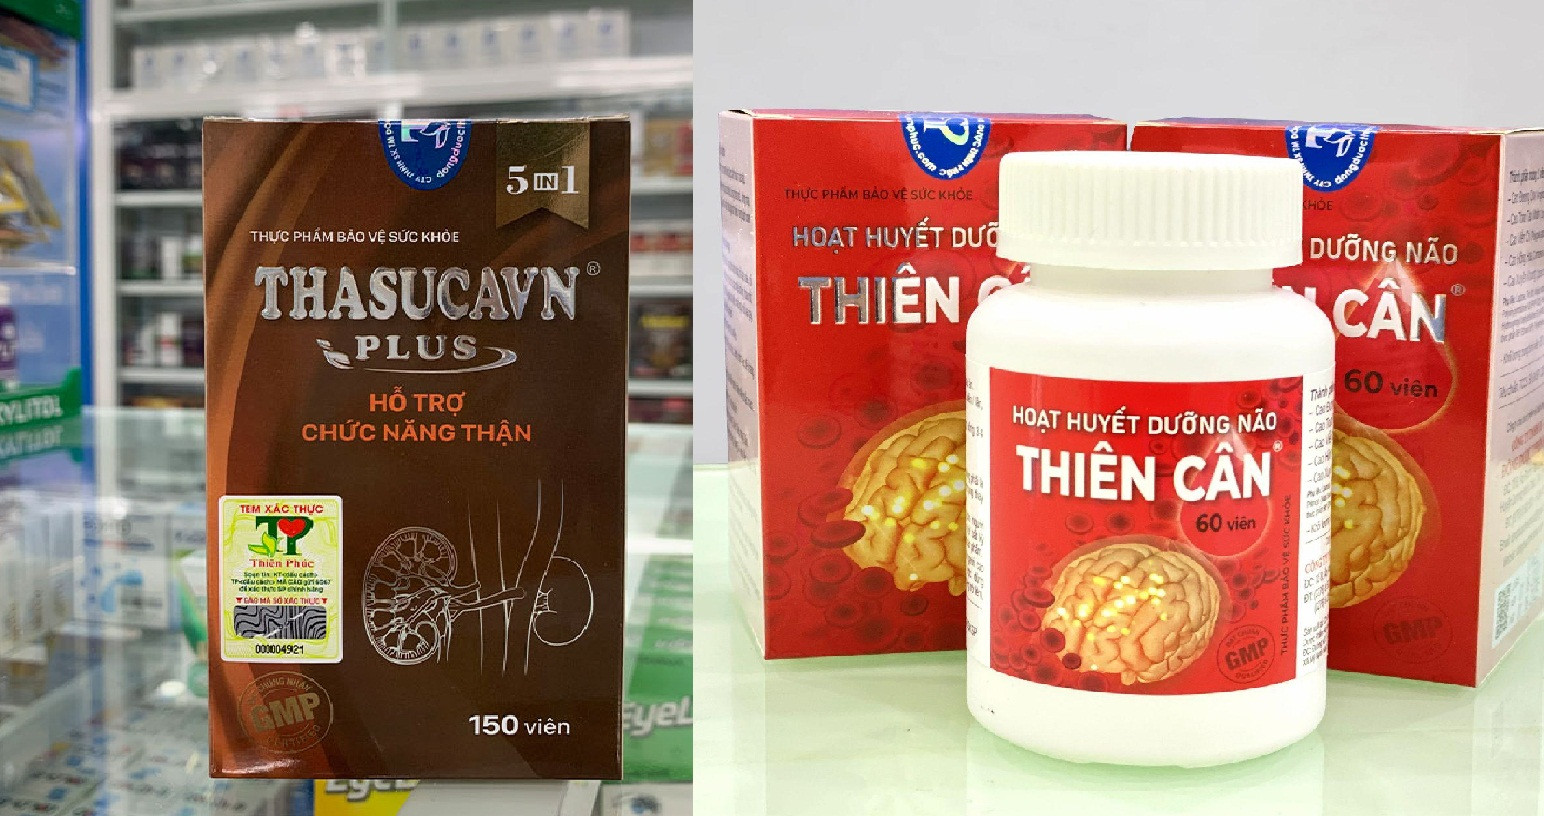 Tạm dừng lưu thông thực phẩm bảo vệ sức khỏe Thasucavn Plus và Hoạt huyết dưỡng não Thiên Cân - Ảnh 2.